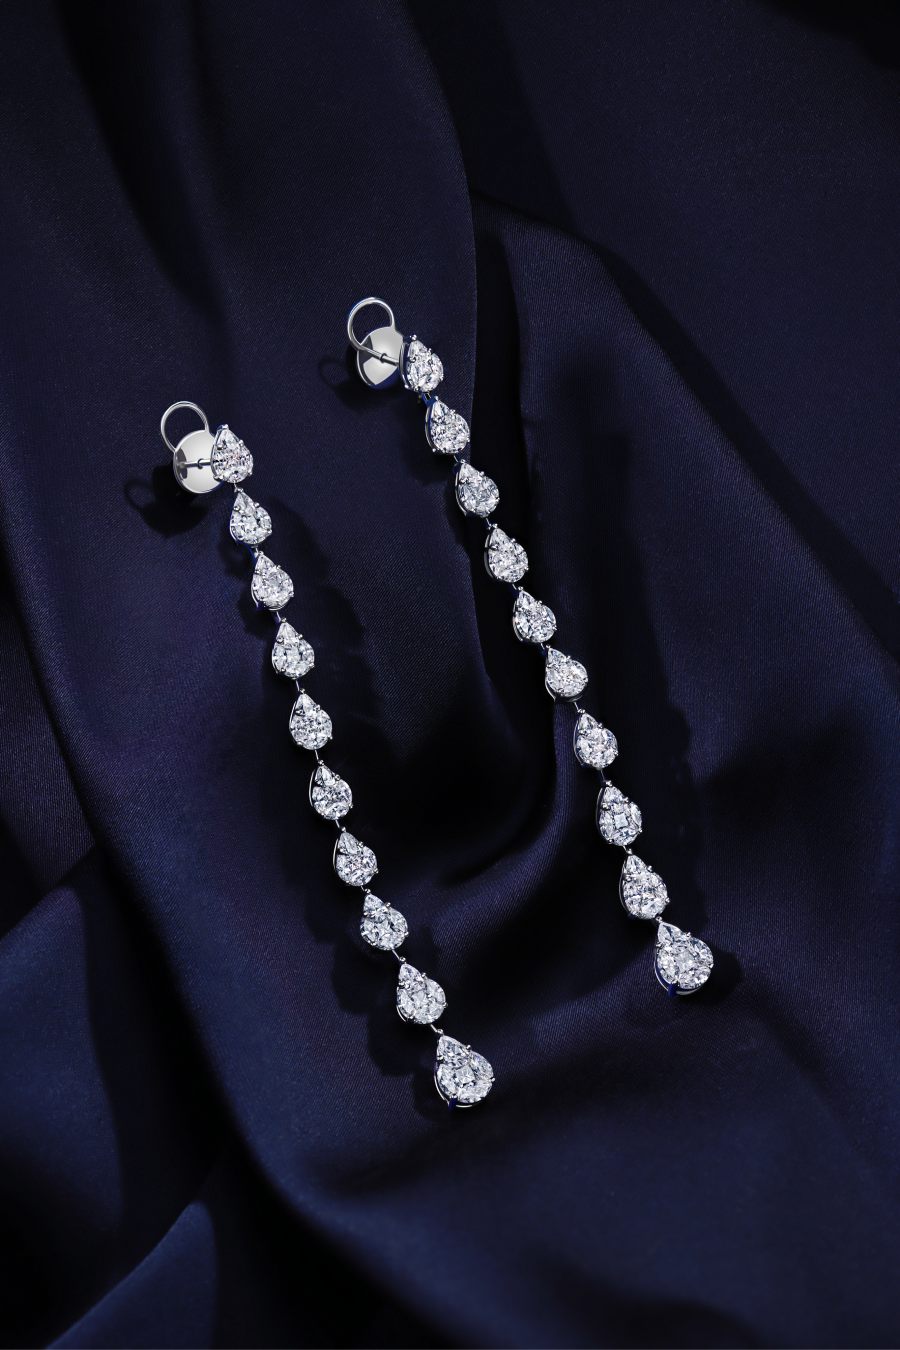 MIUZ Diamonds представил подборку свадебных украшений с бриллиантами (фото 4)